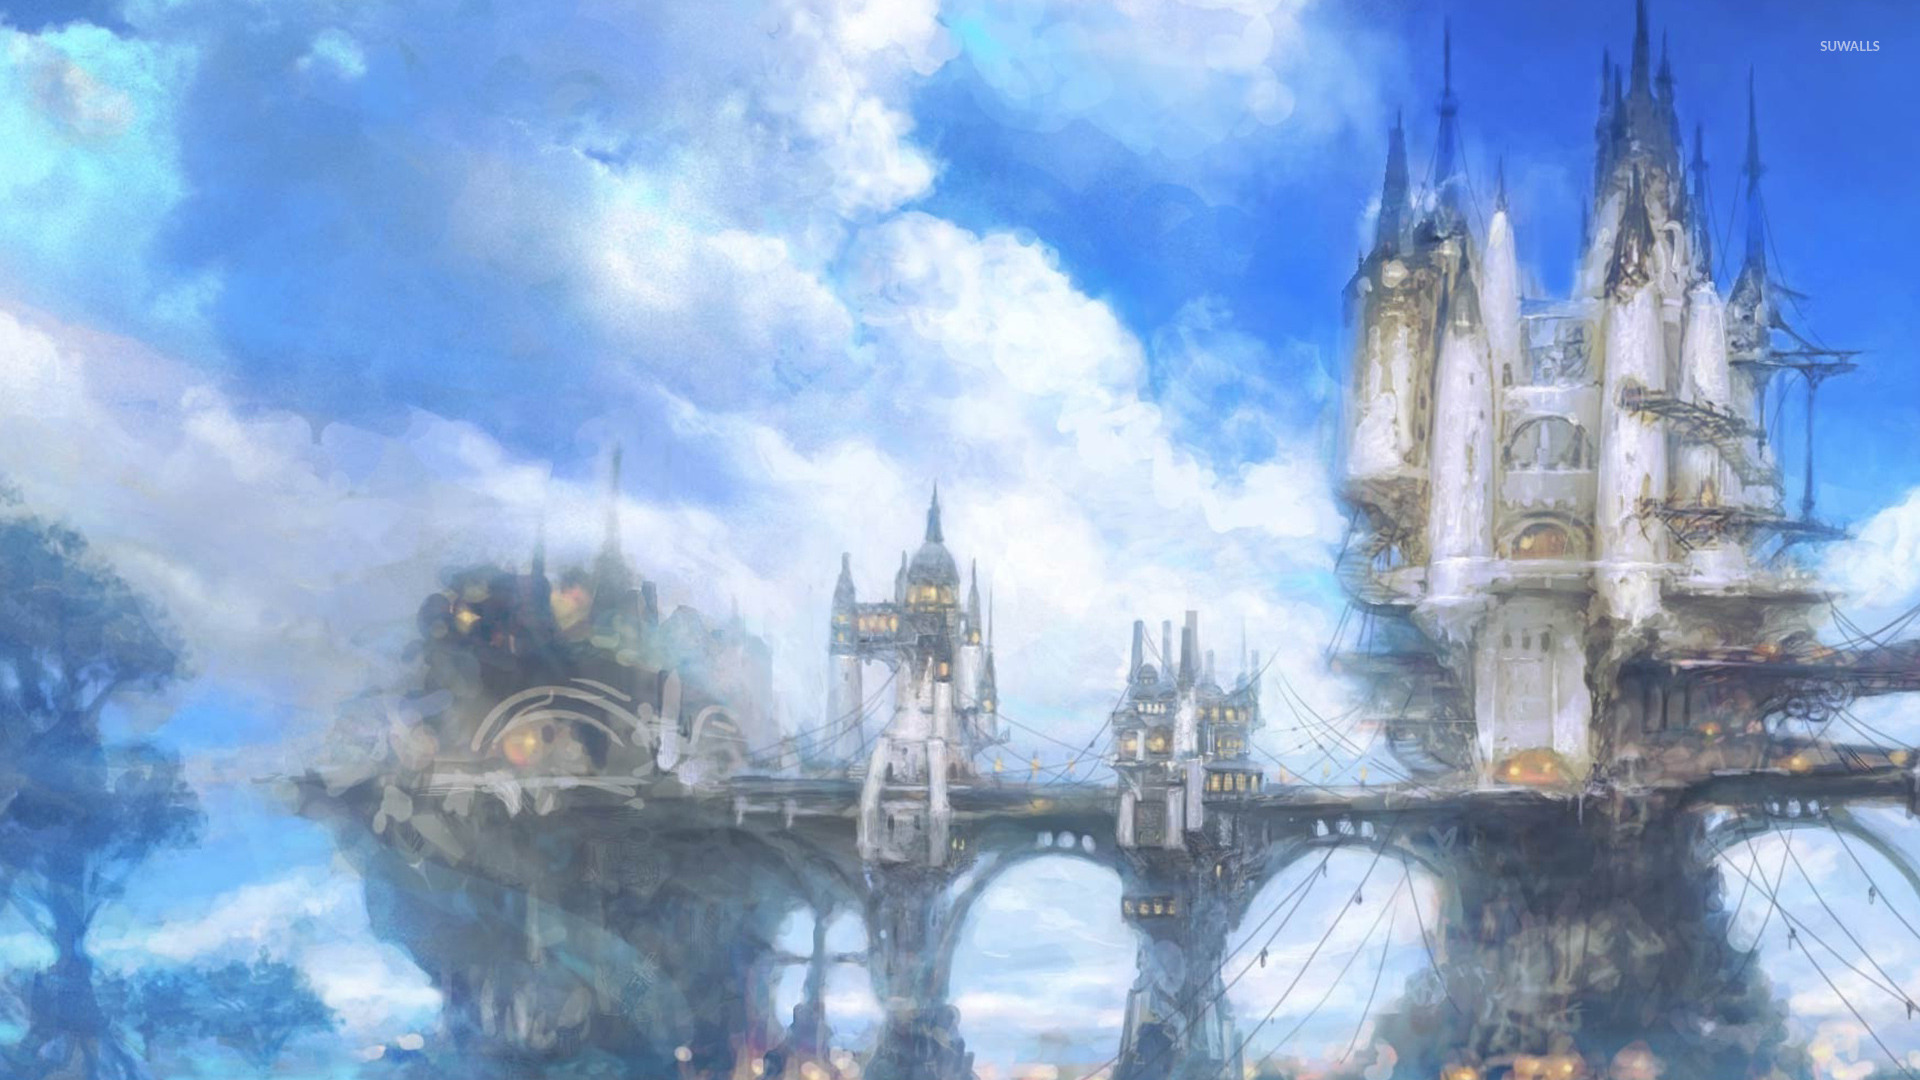 [50+] Final Fantasy XIV Wallpapers | WallpaperSafari